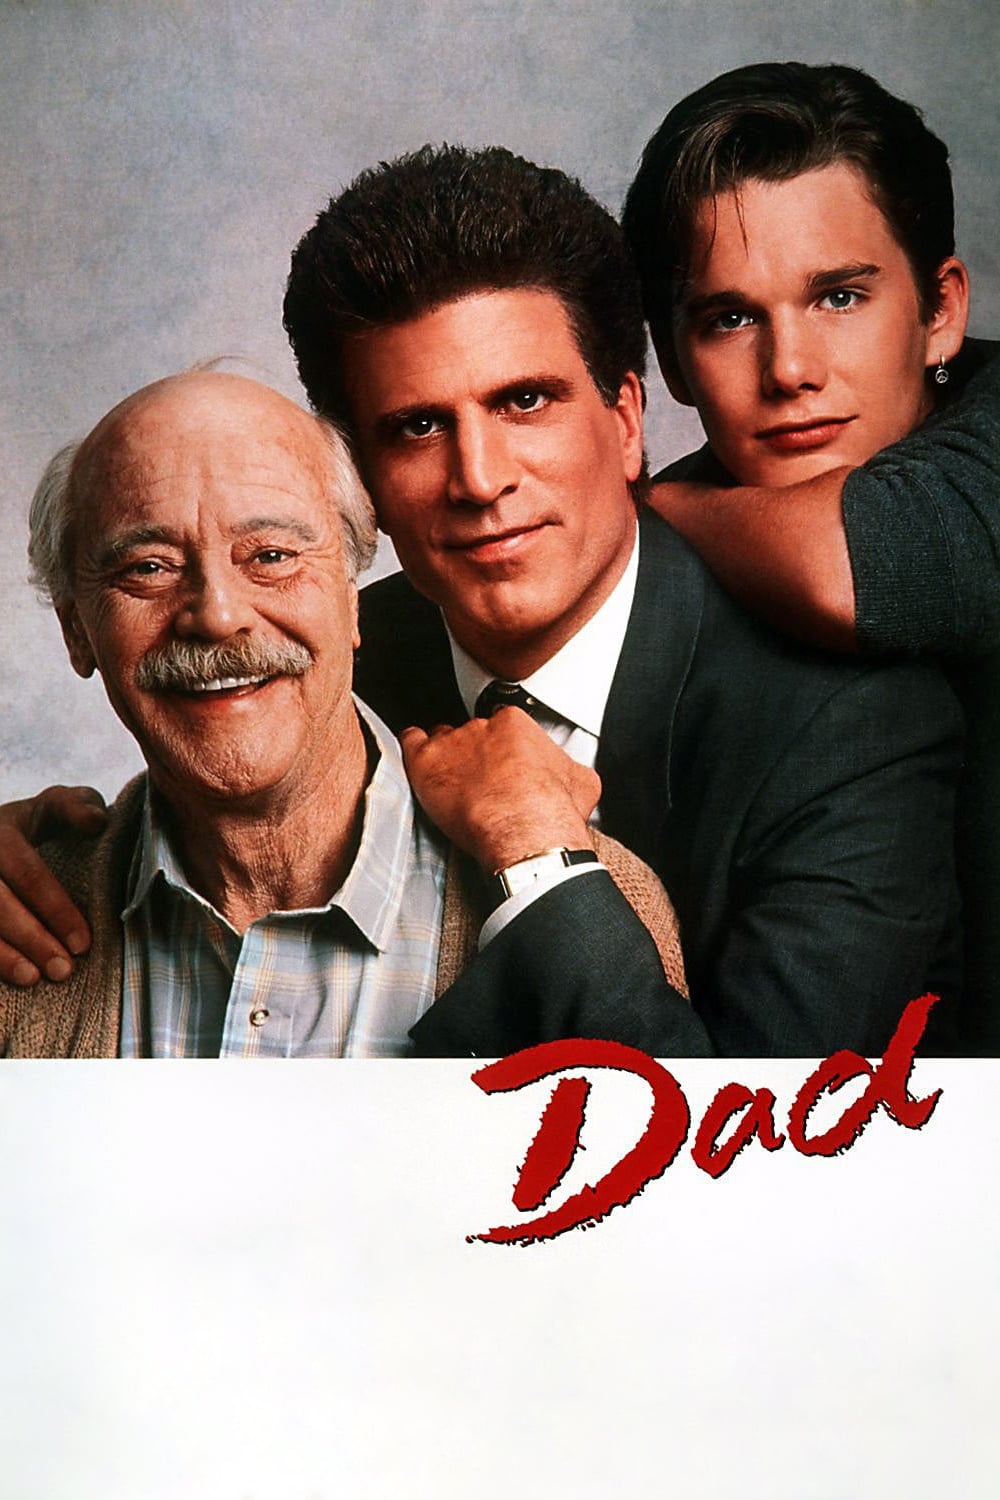 Plakat von "Dad"